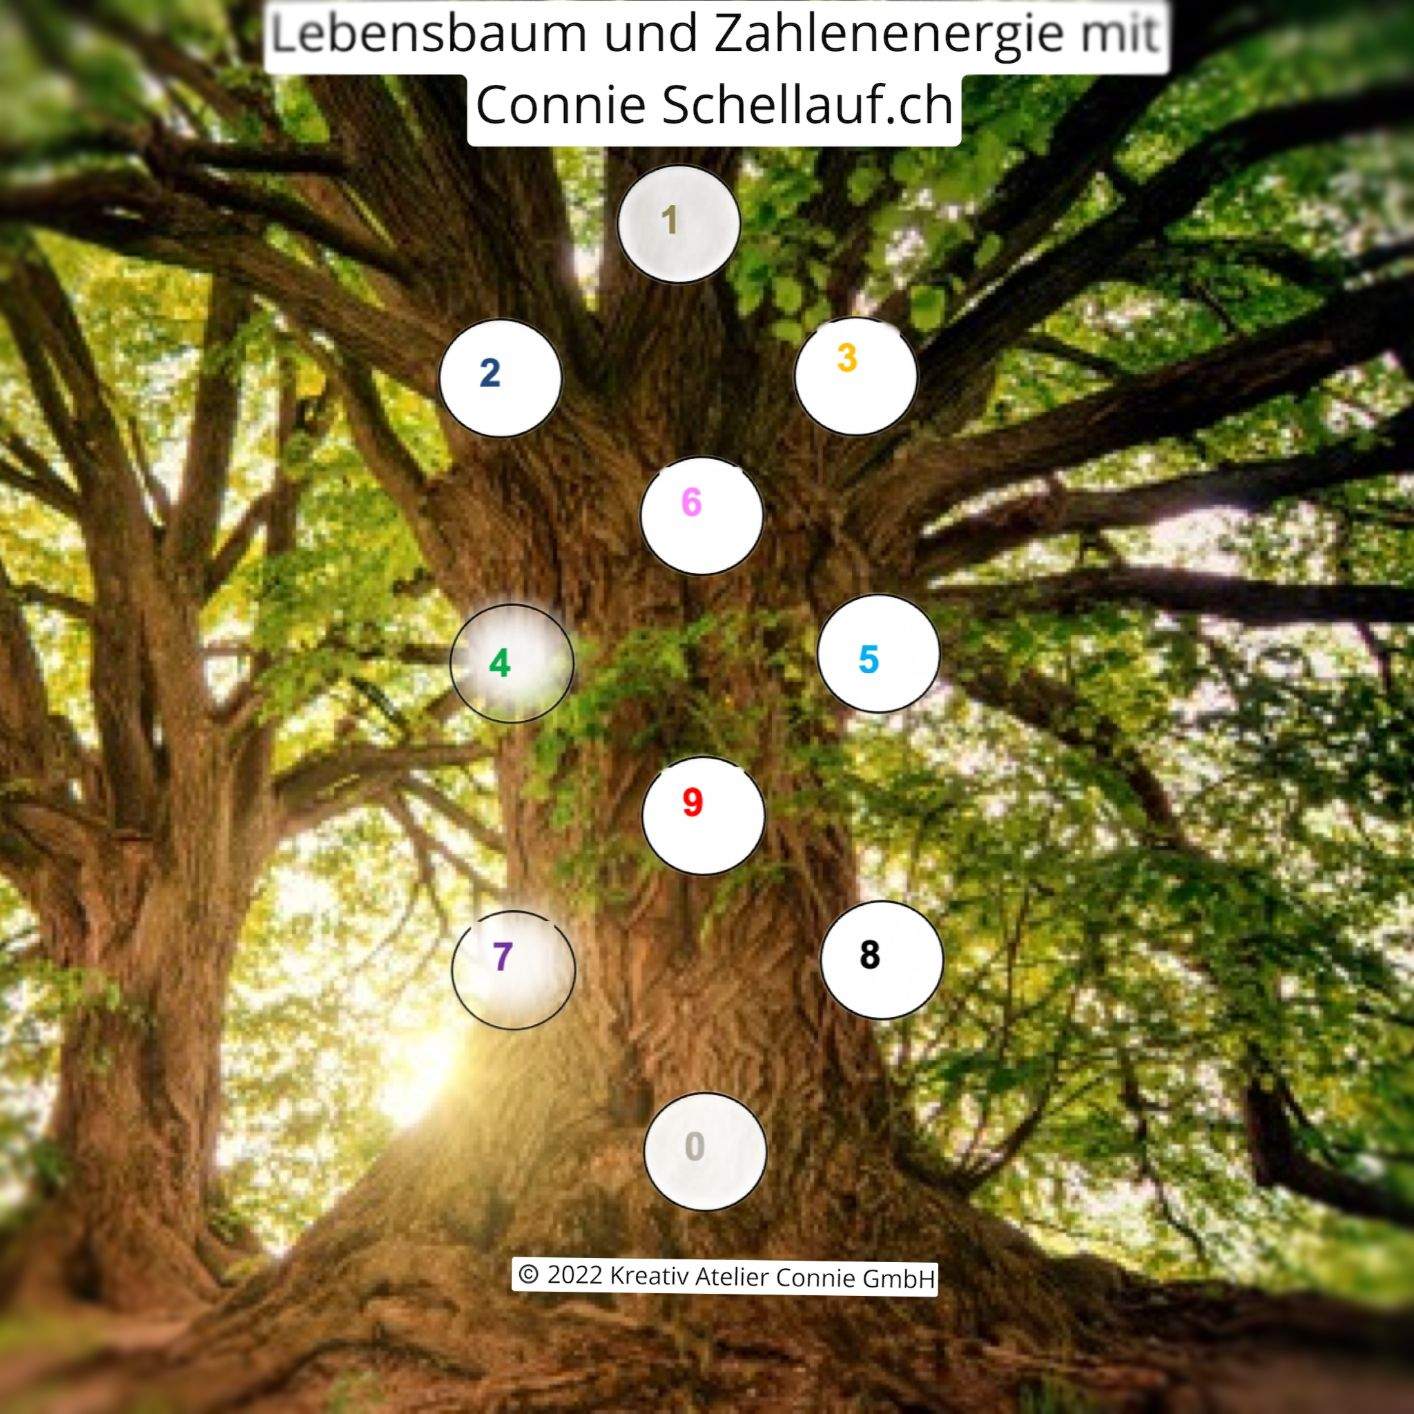 Lebensbaum und Zahlenenergie Seminar mit Connie Schellauf.ch